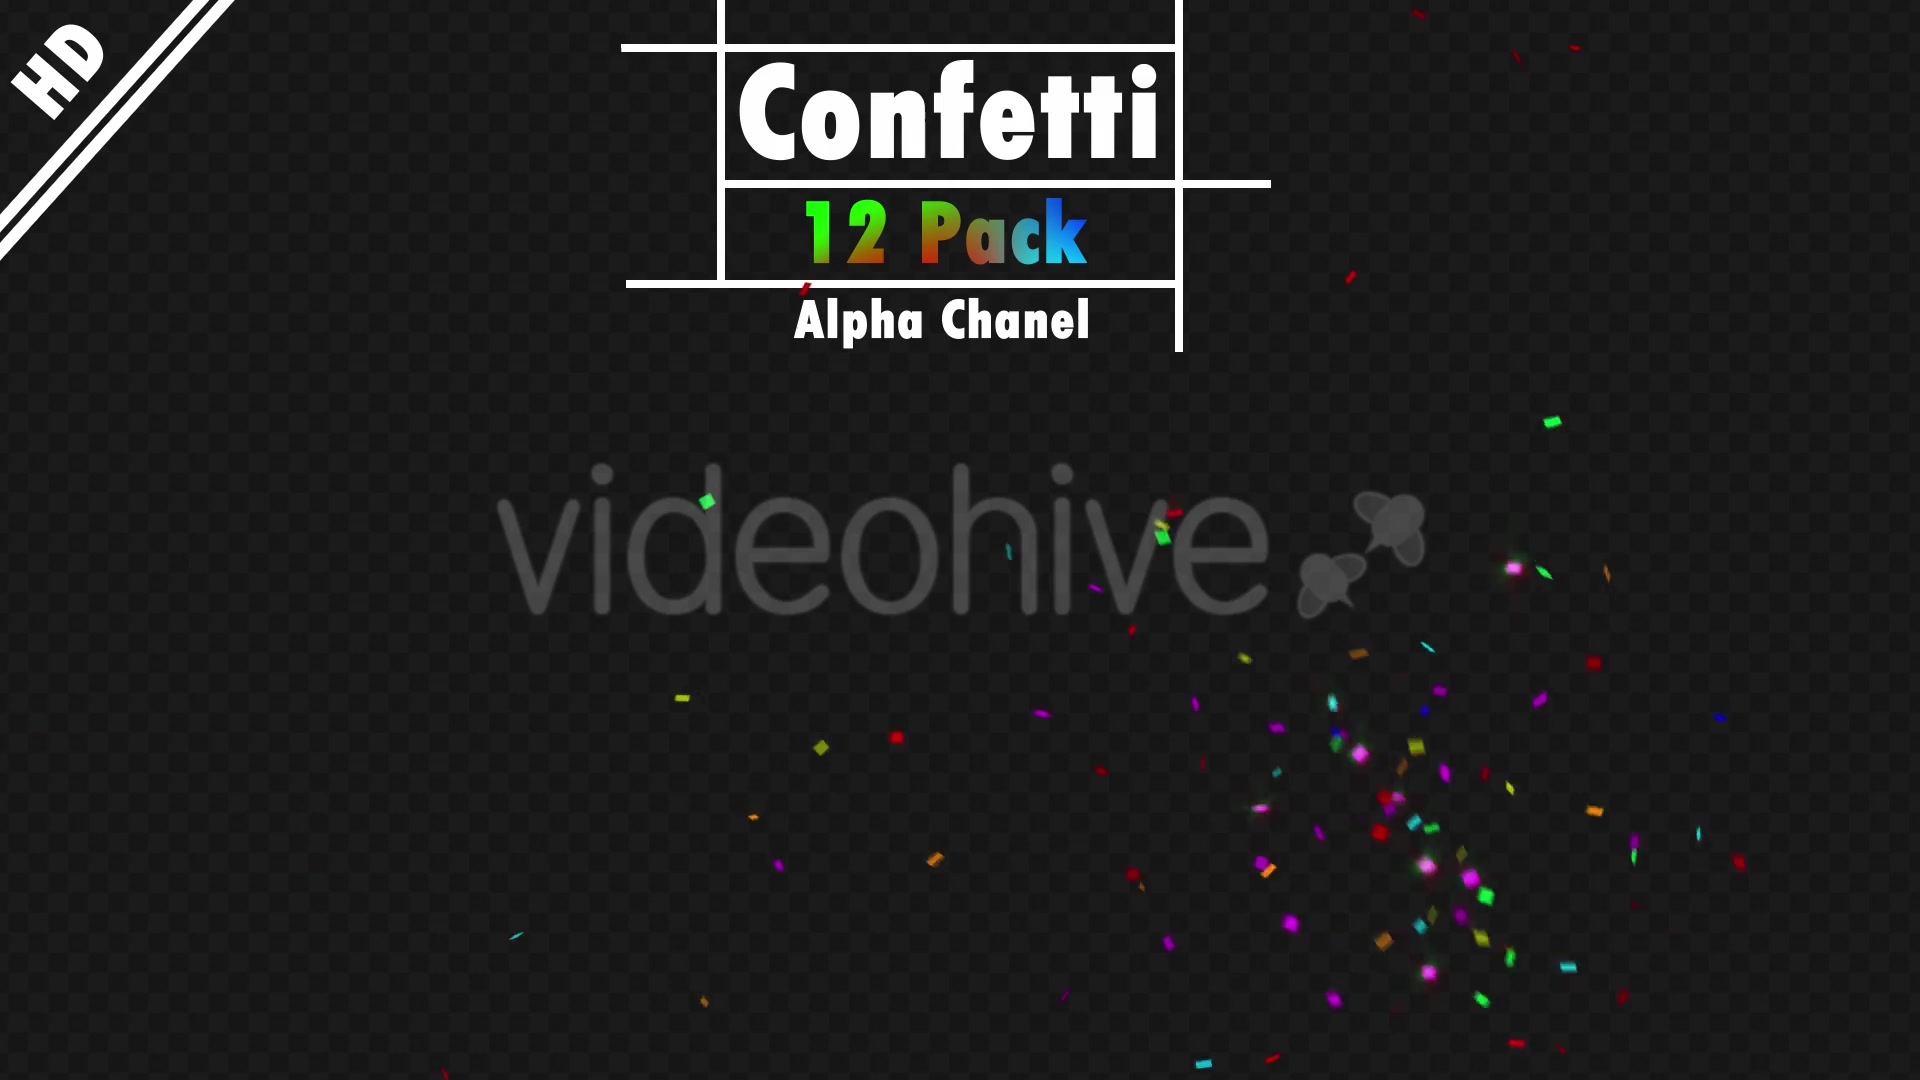 Confetti Videohive 20192923 Motion Graphics Image 5